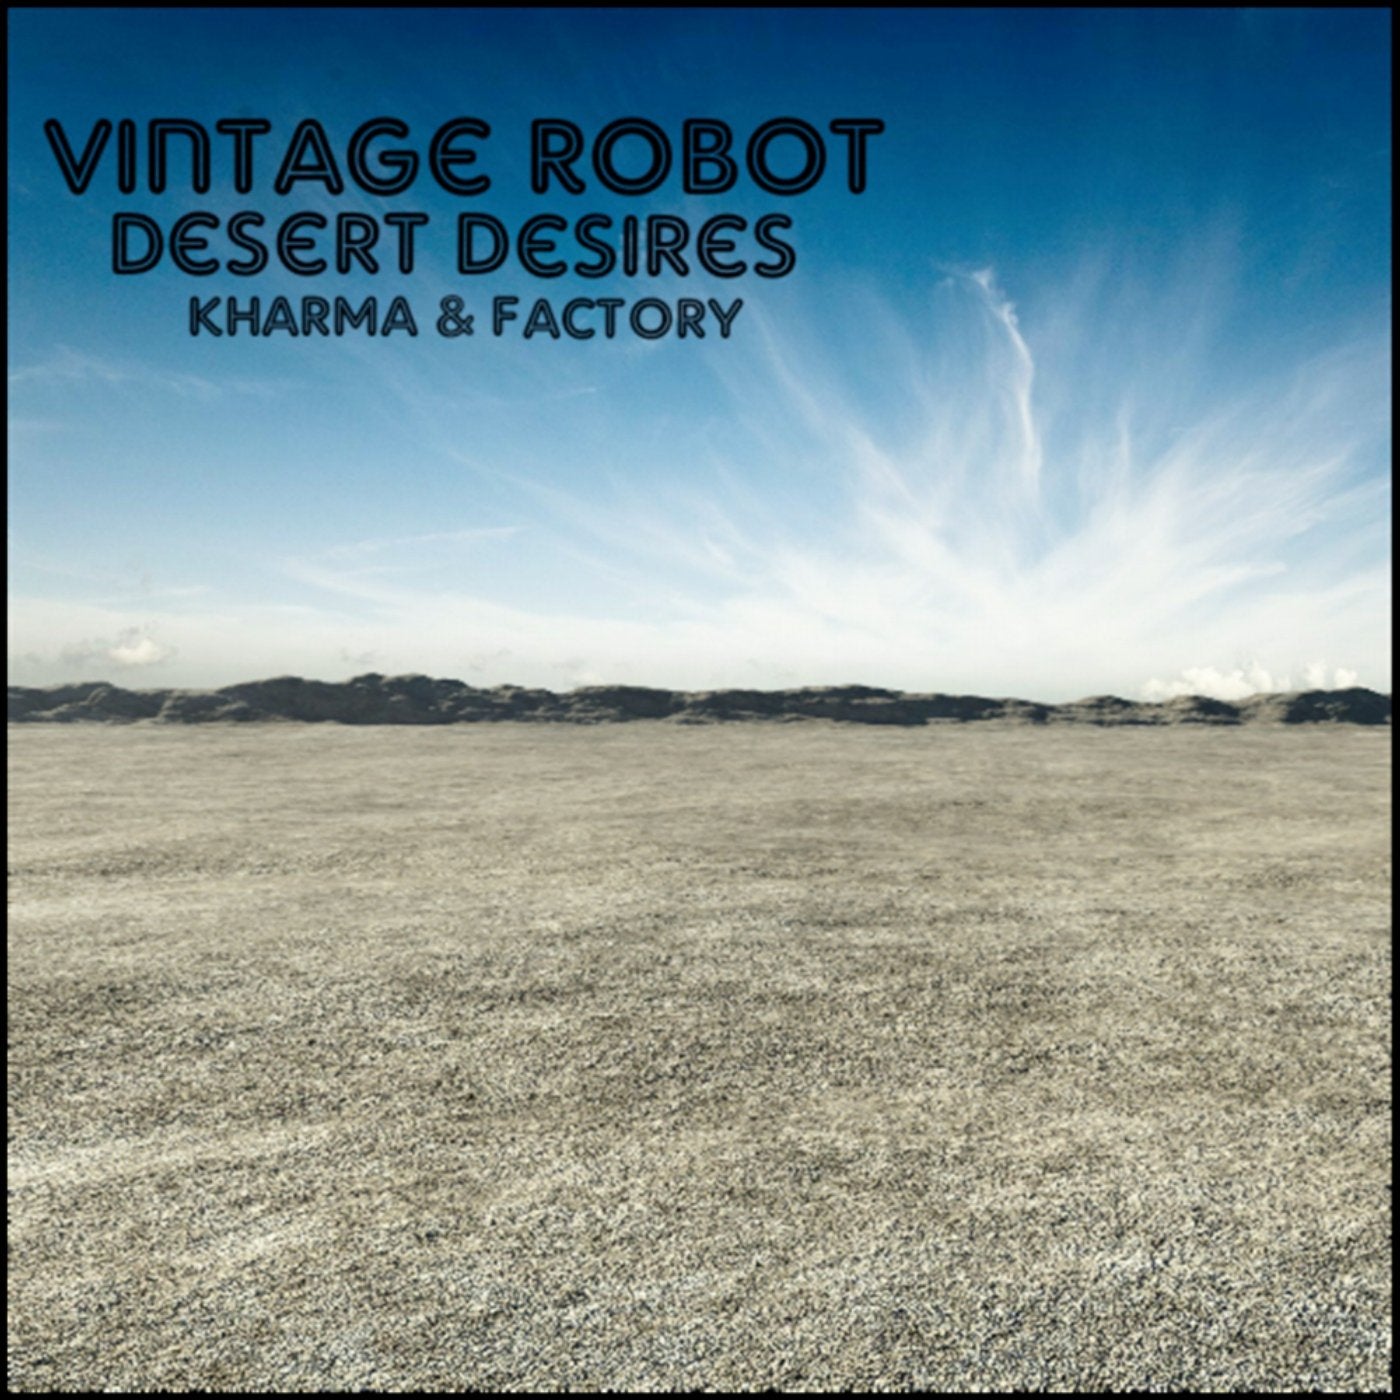 Desert desires